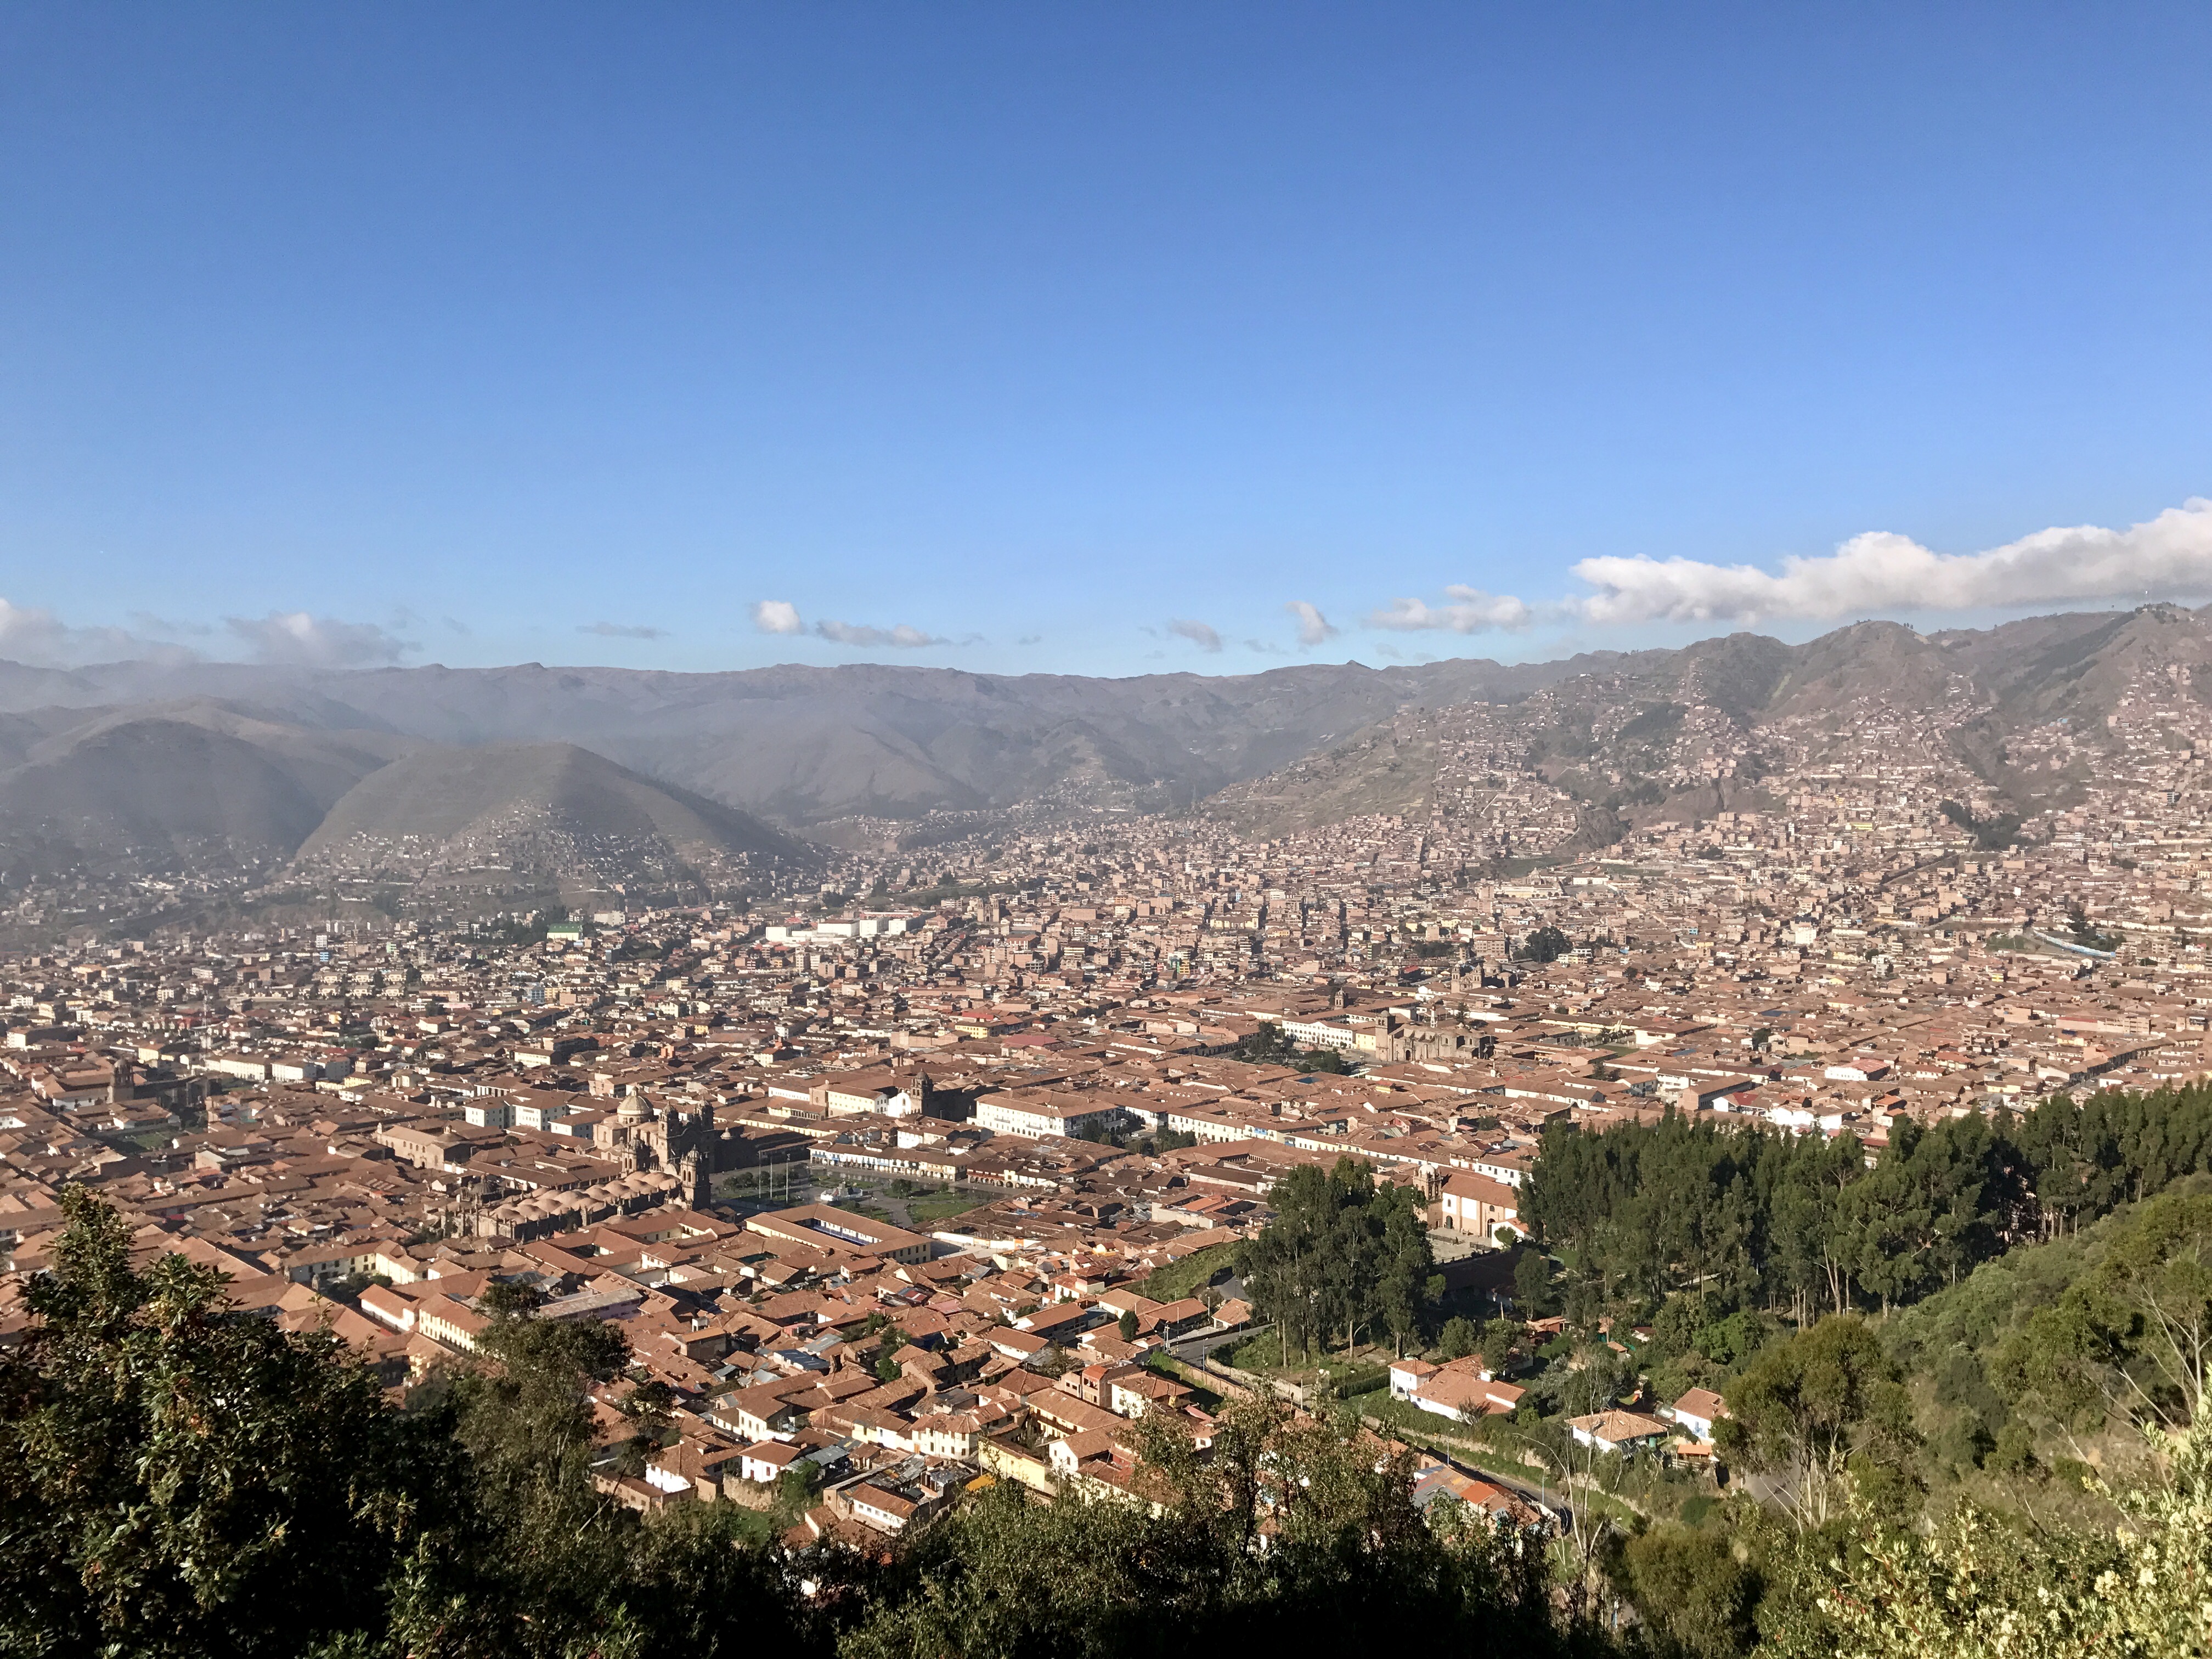 Mountain Top View of Cuzco, Peru